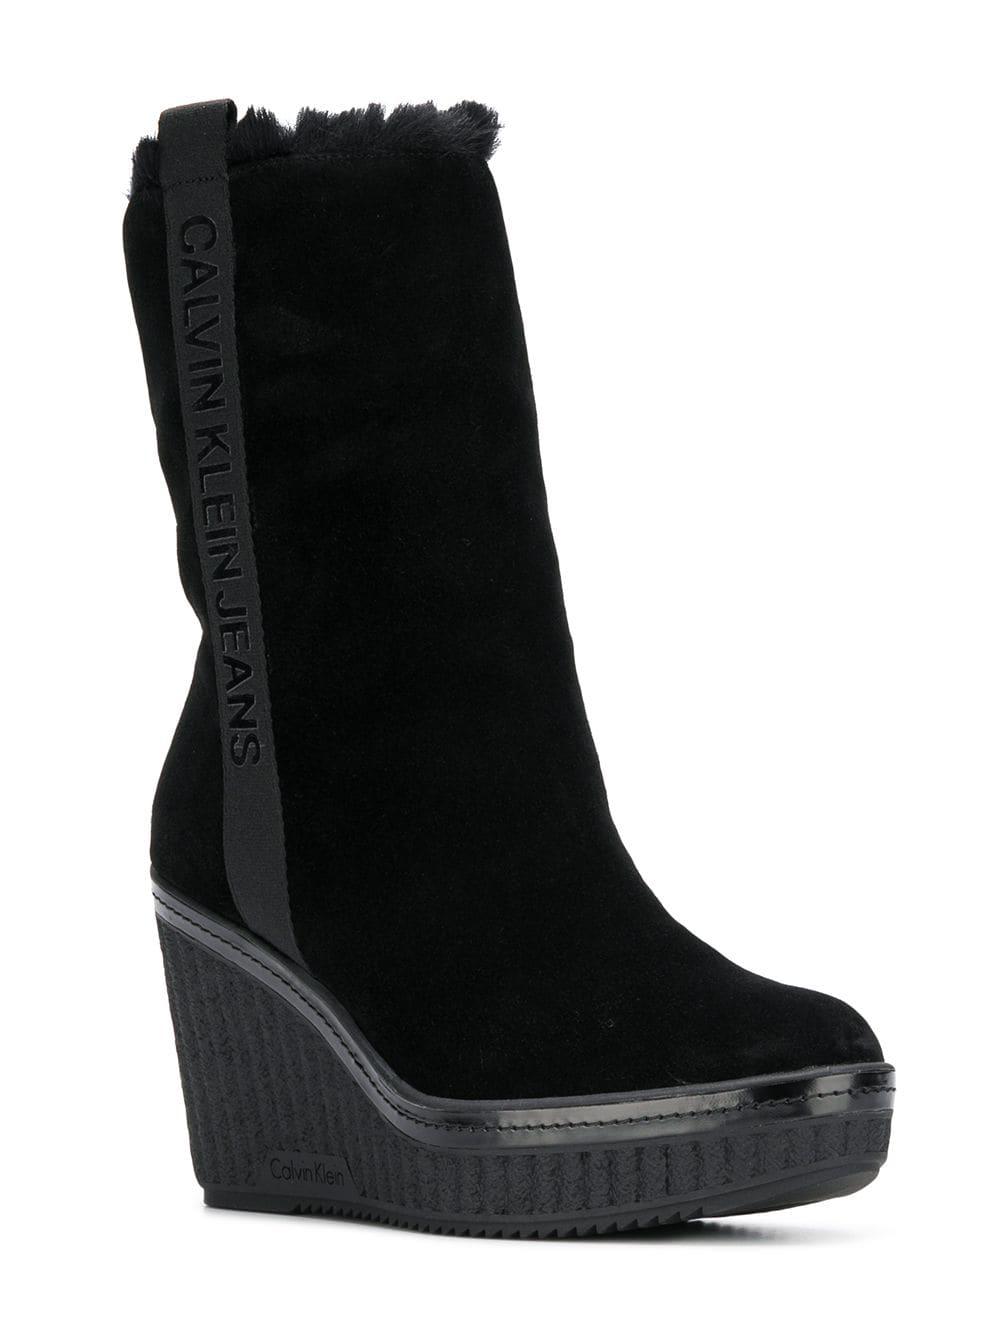 Calvin Klein Denim Wedge Boots in Black - Lyst